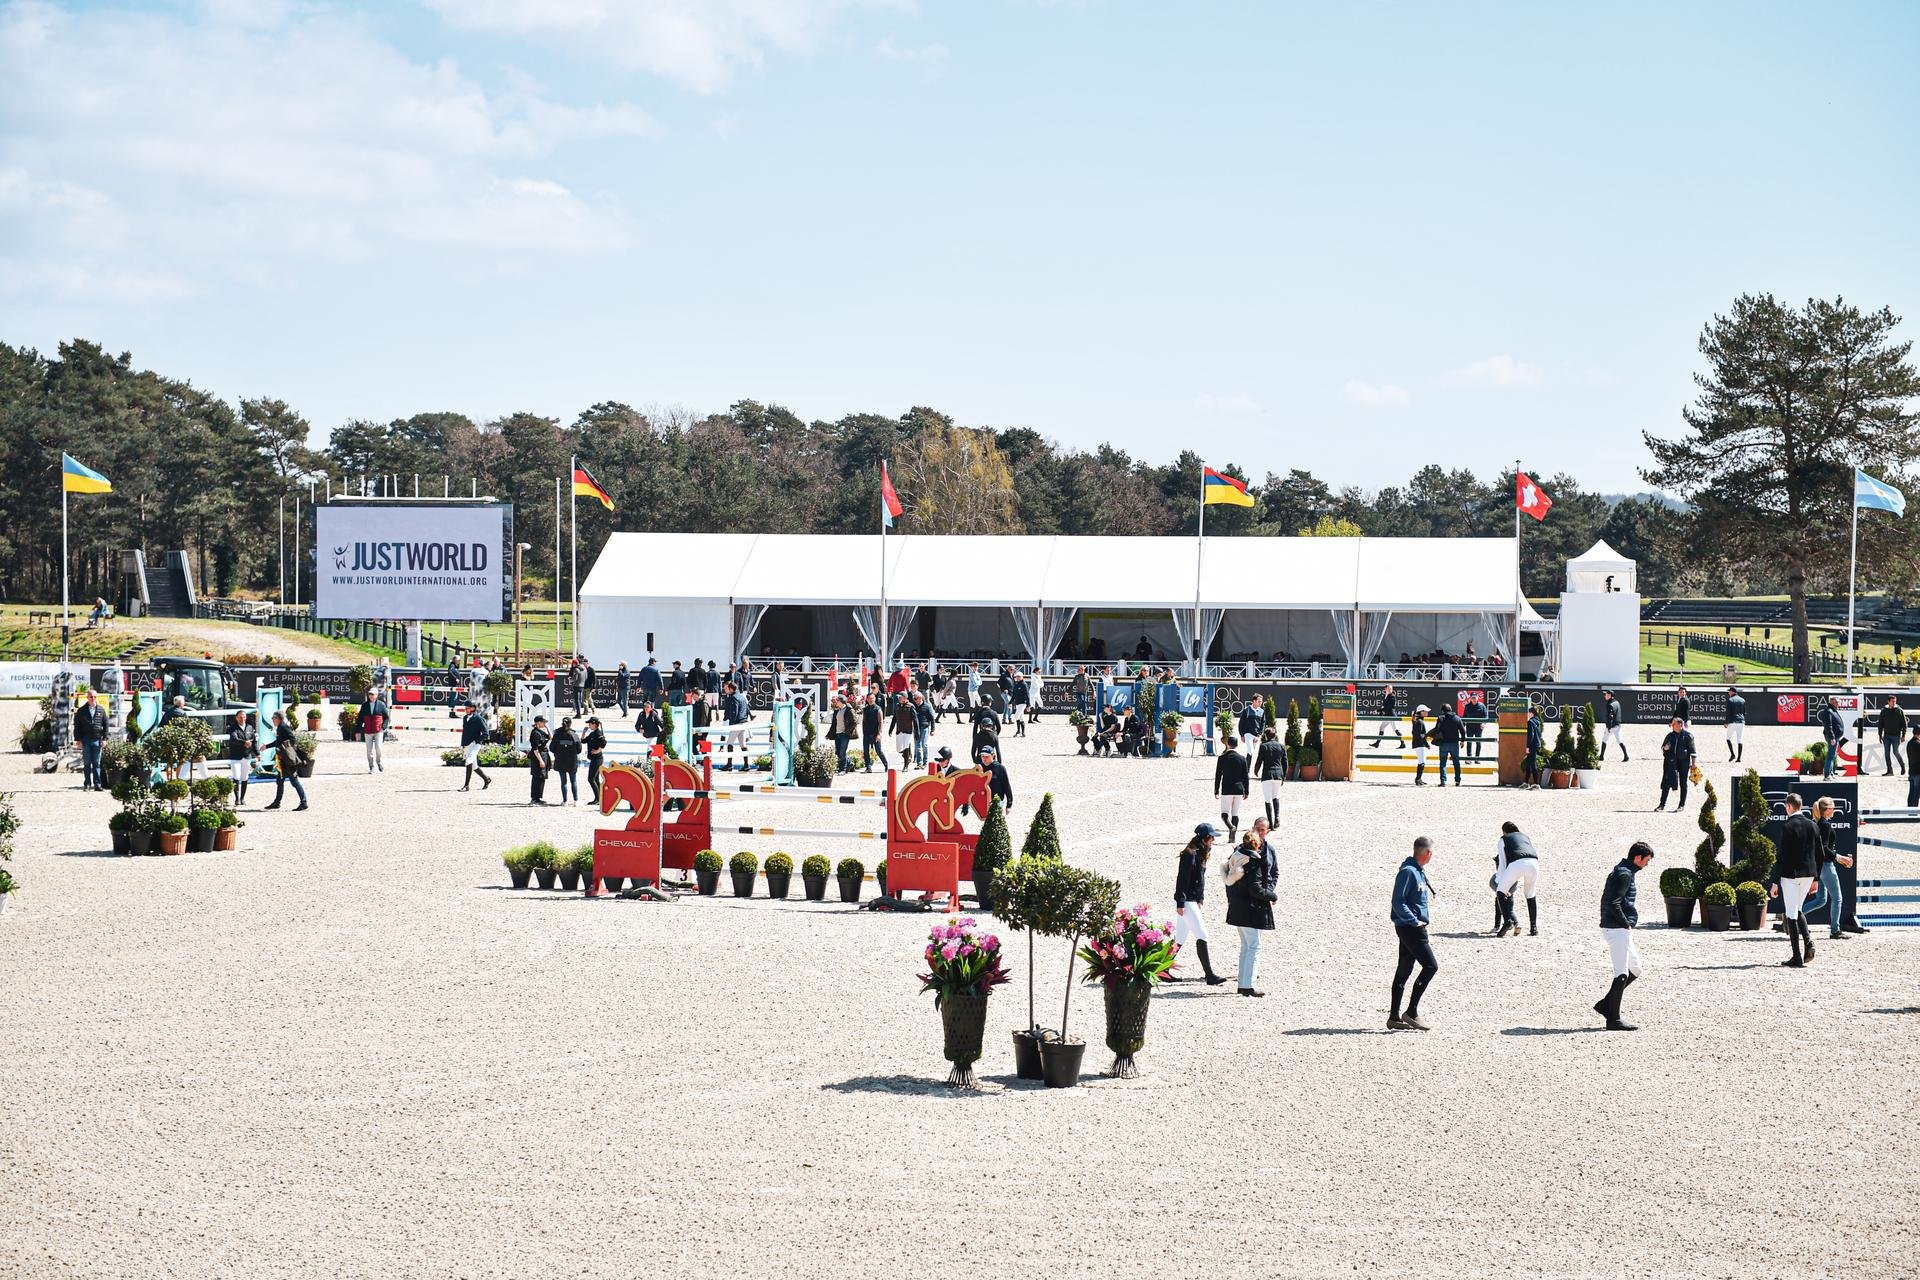 Les Printemps des Sports Équestres apoya a JustWorld con visibilidad en un ambiente festivo